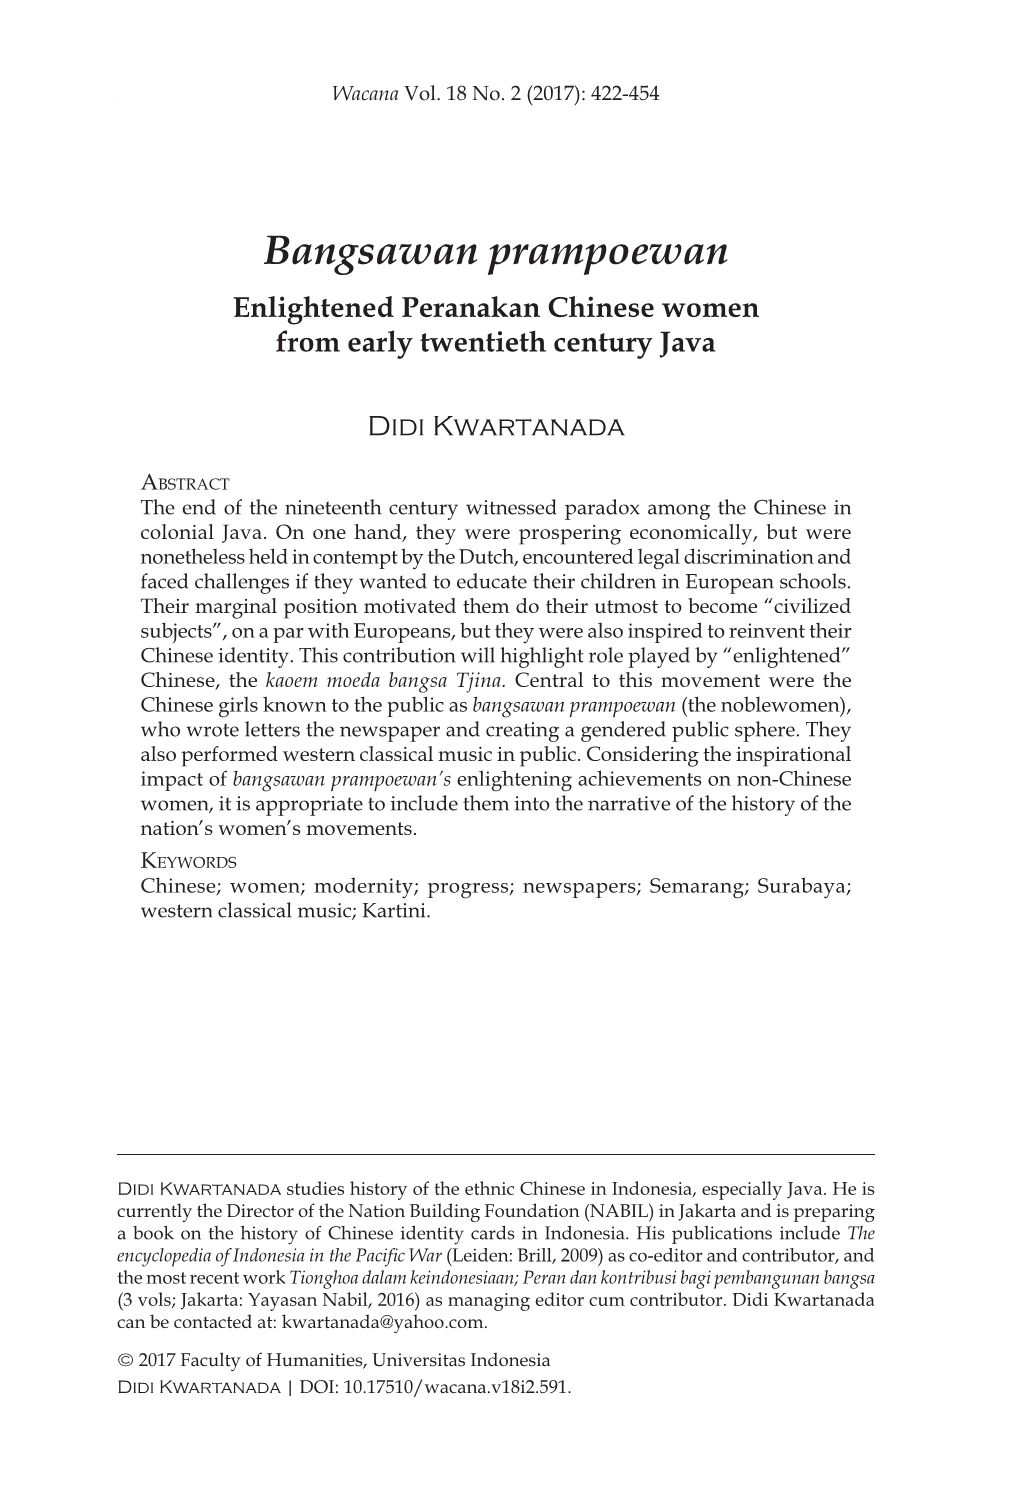 Bangsawan Prampoewan Enlightened Peranakan Chinese Women from Early Twentieth Century Java